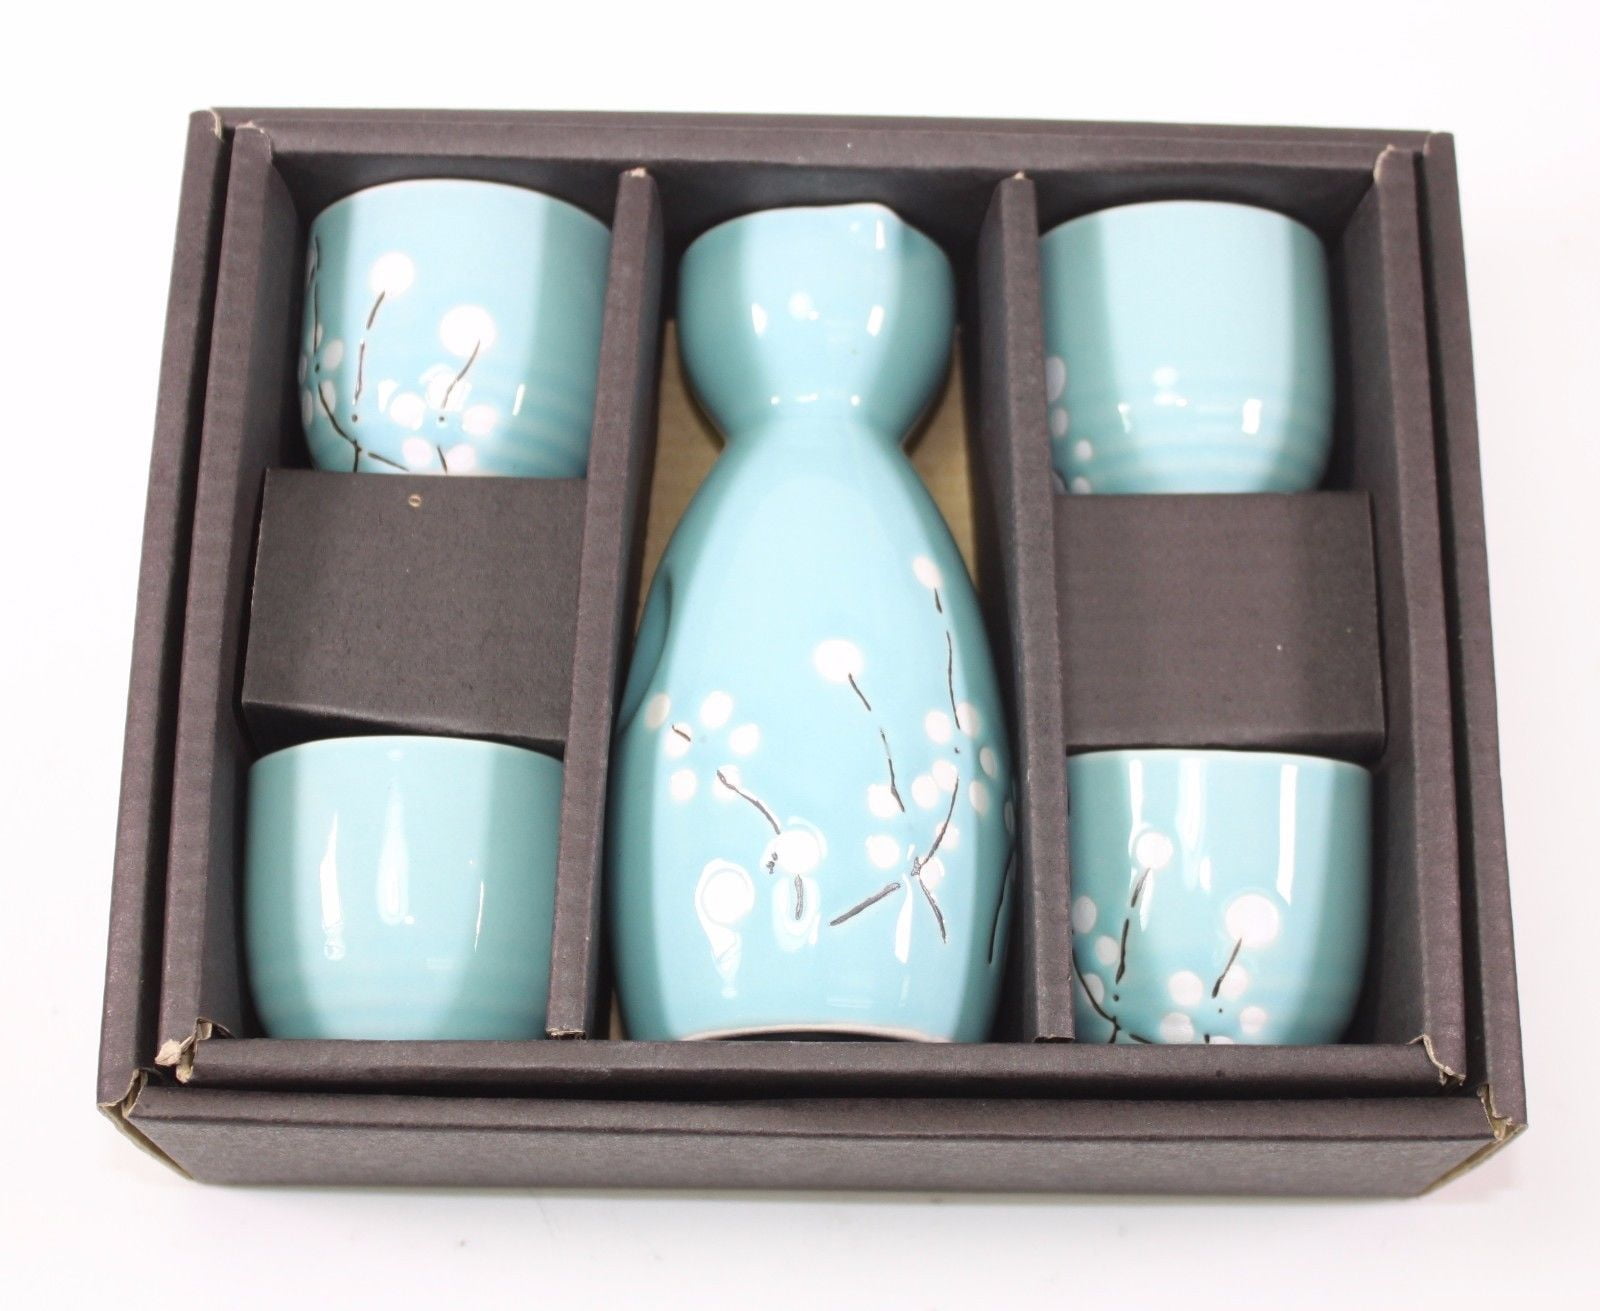 DUEBEL Sake Pots with 4 Sake Glass Decanter Cups Sets for Warmer or Cold Wine Glass Sake Pots & Sets 